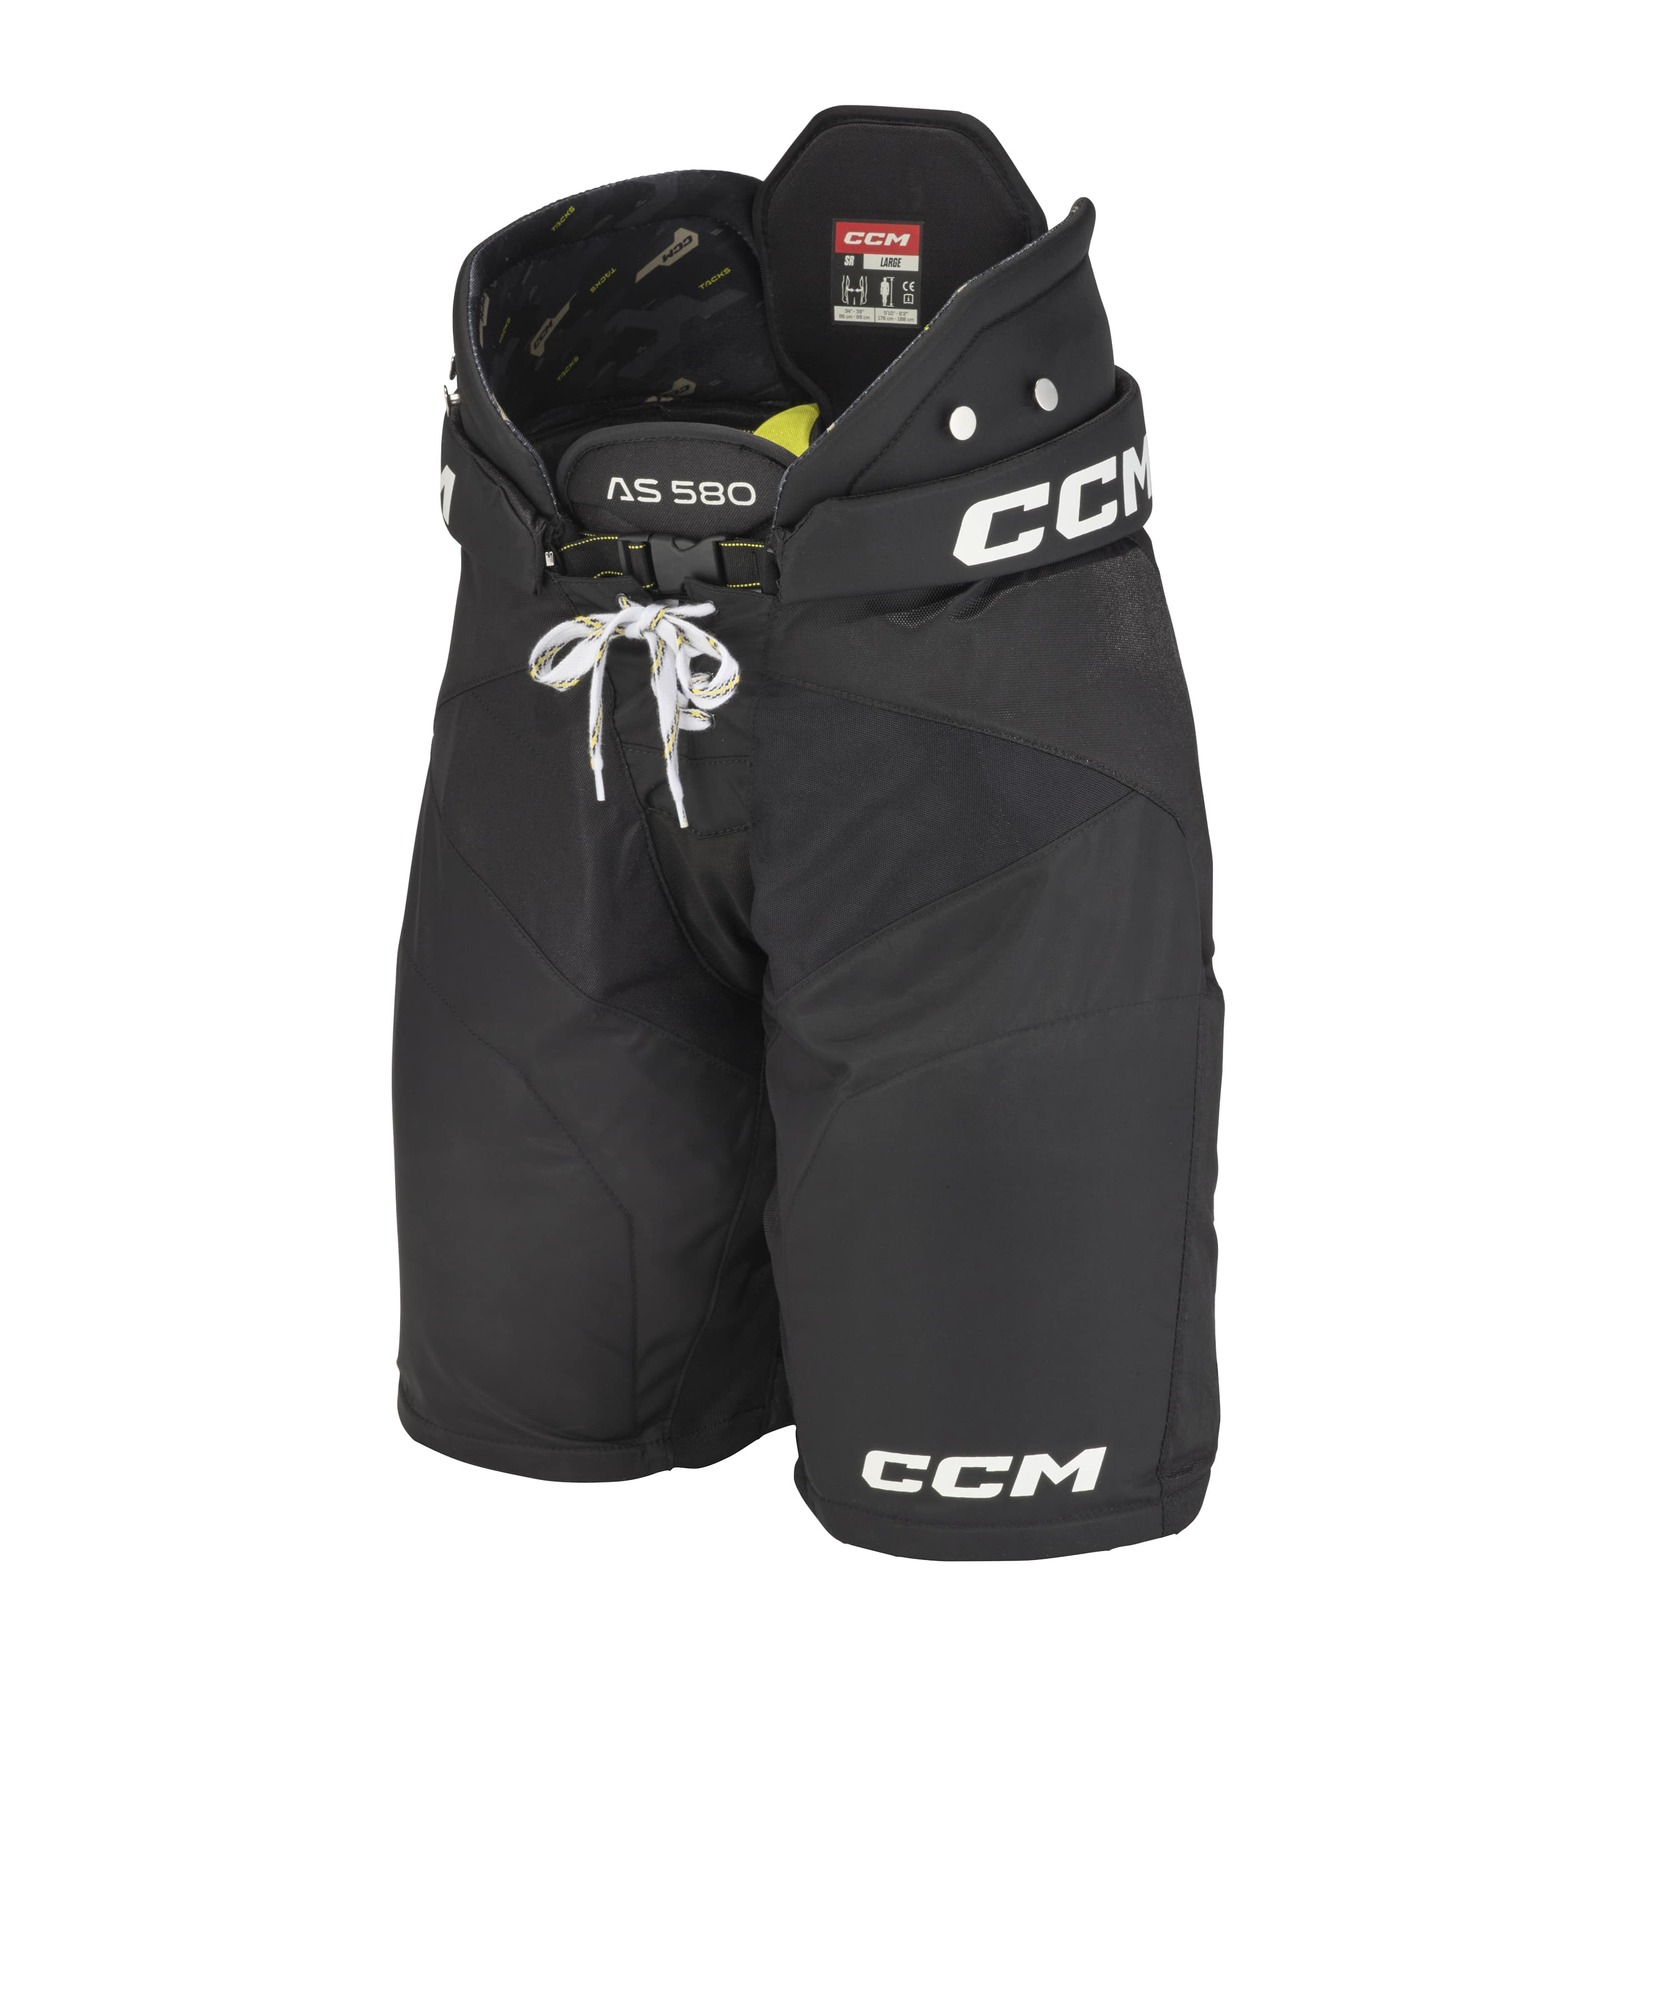 CCM Kalhoty CCM Tacks AS-580 JR